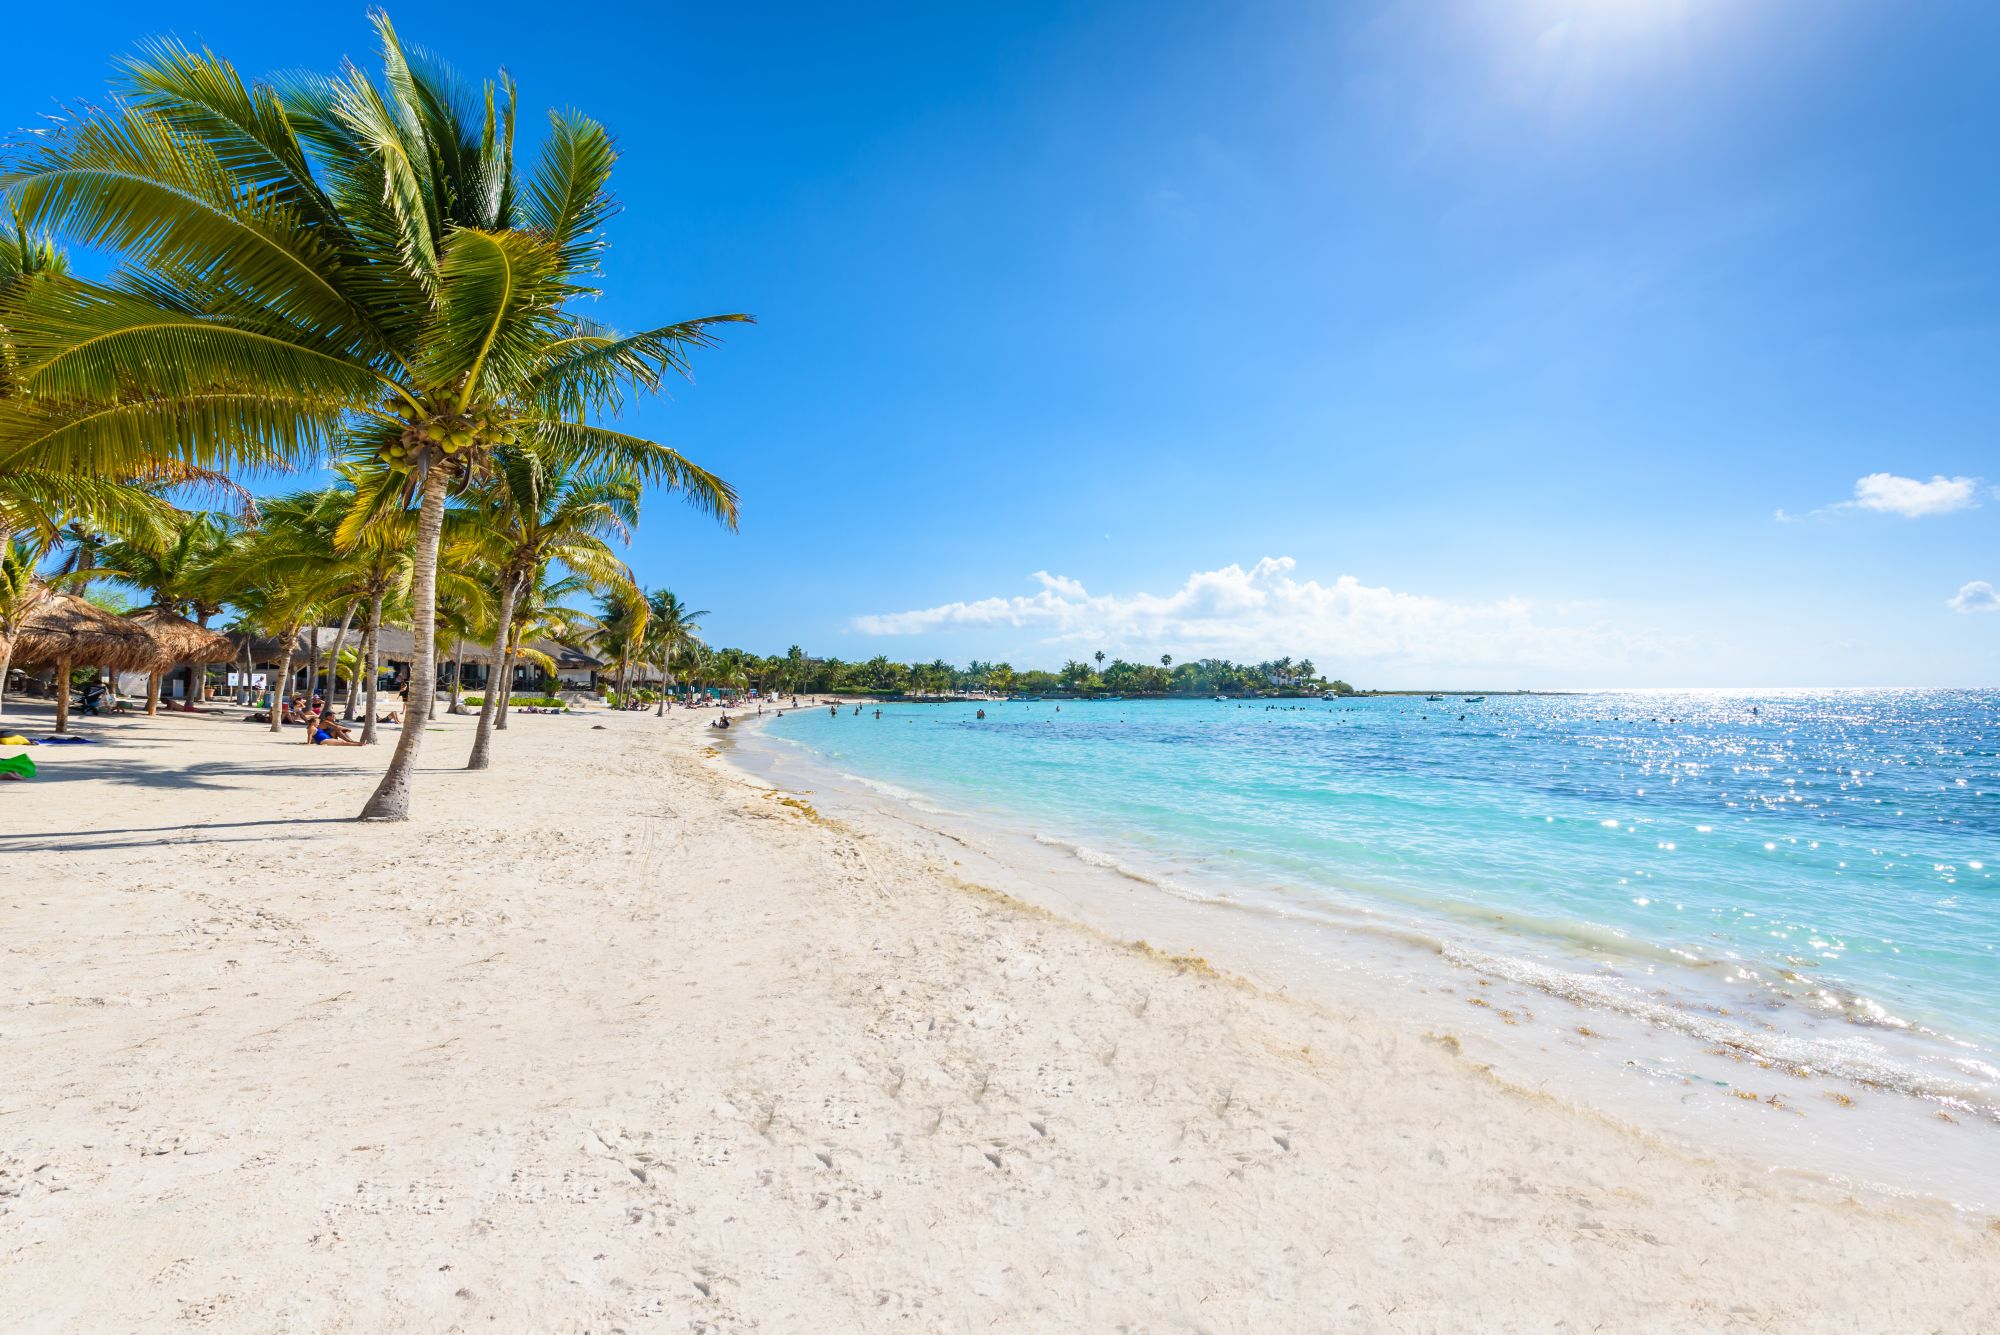 Akumal beach - Paradise Bay - tropikalna plaża w Quintana Roo, Meksyk - wybrzeże karaibskie